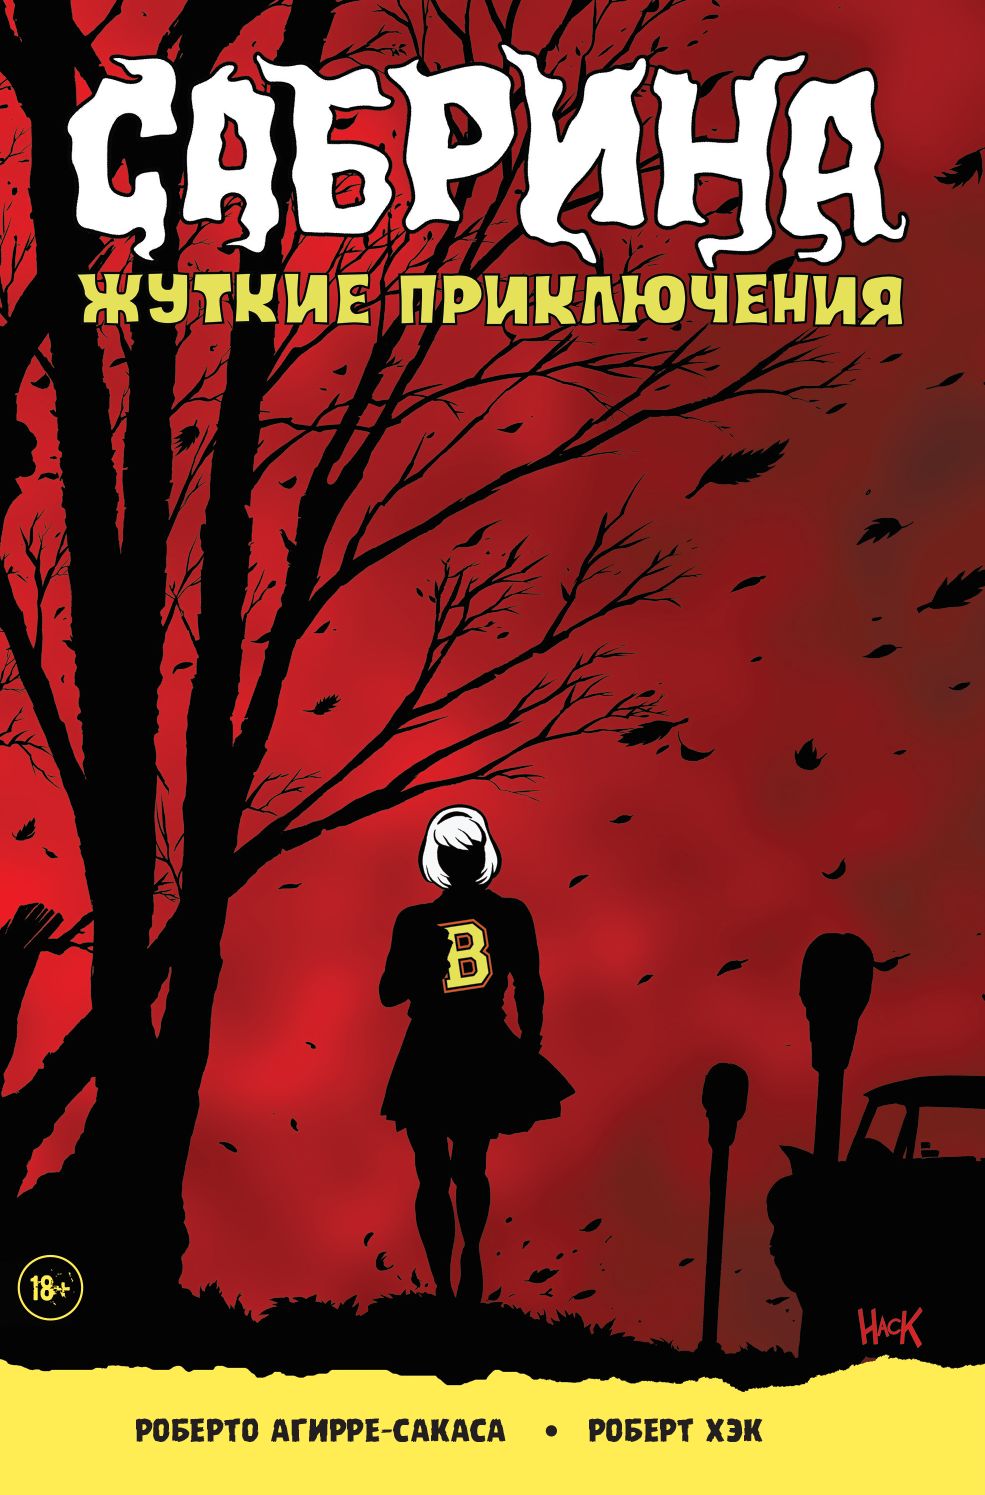 Комікс російською мовою "Сабріна. Моторошні пригоди"